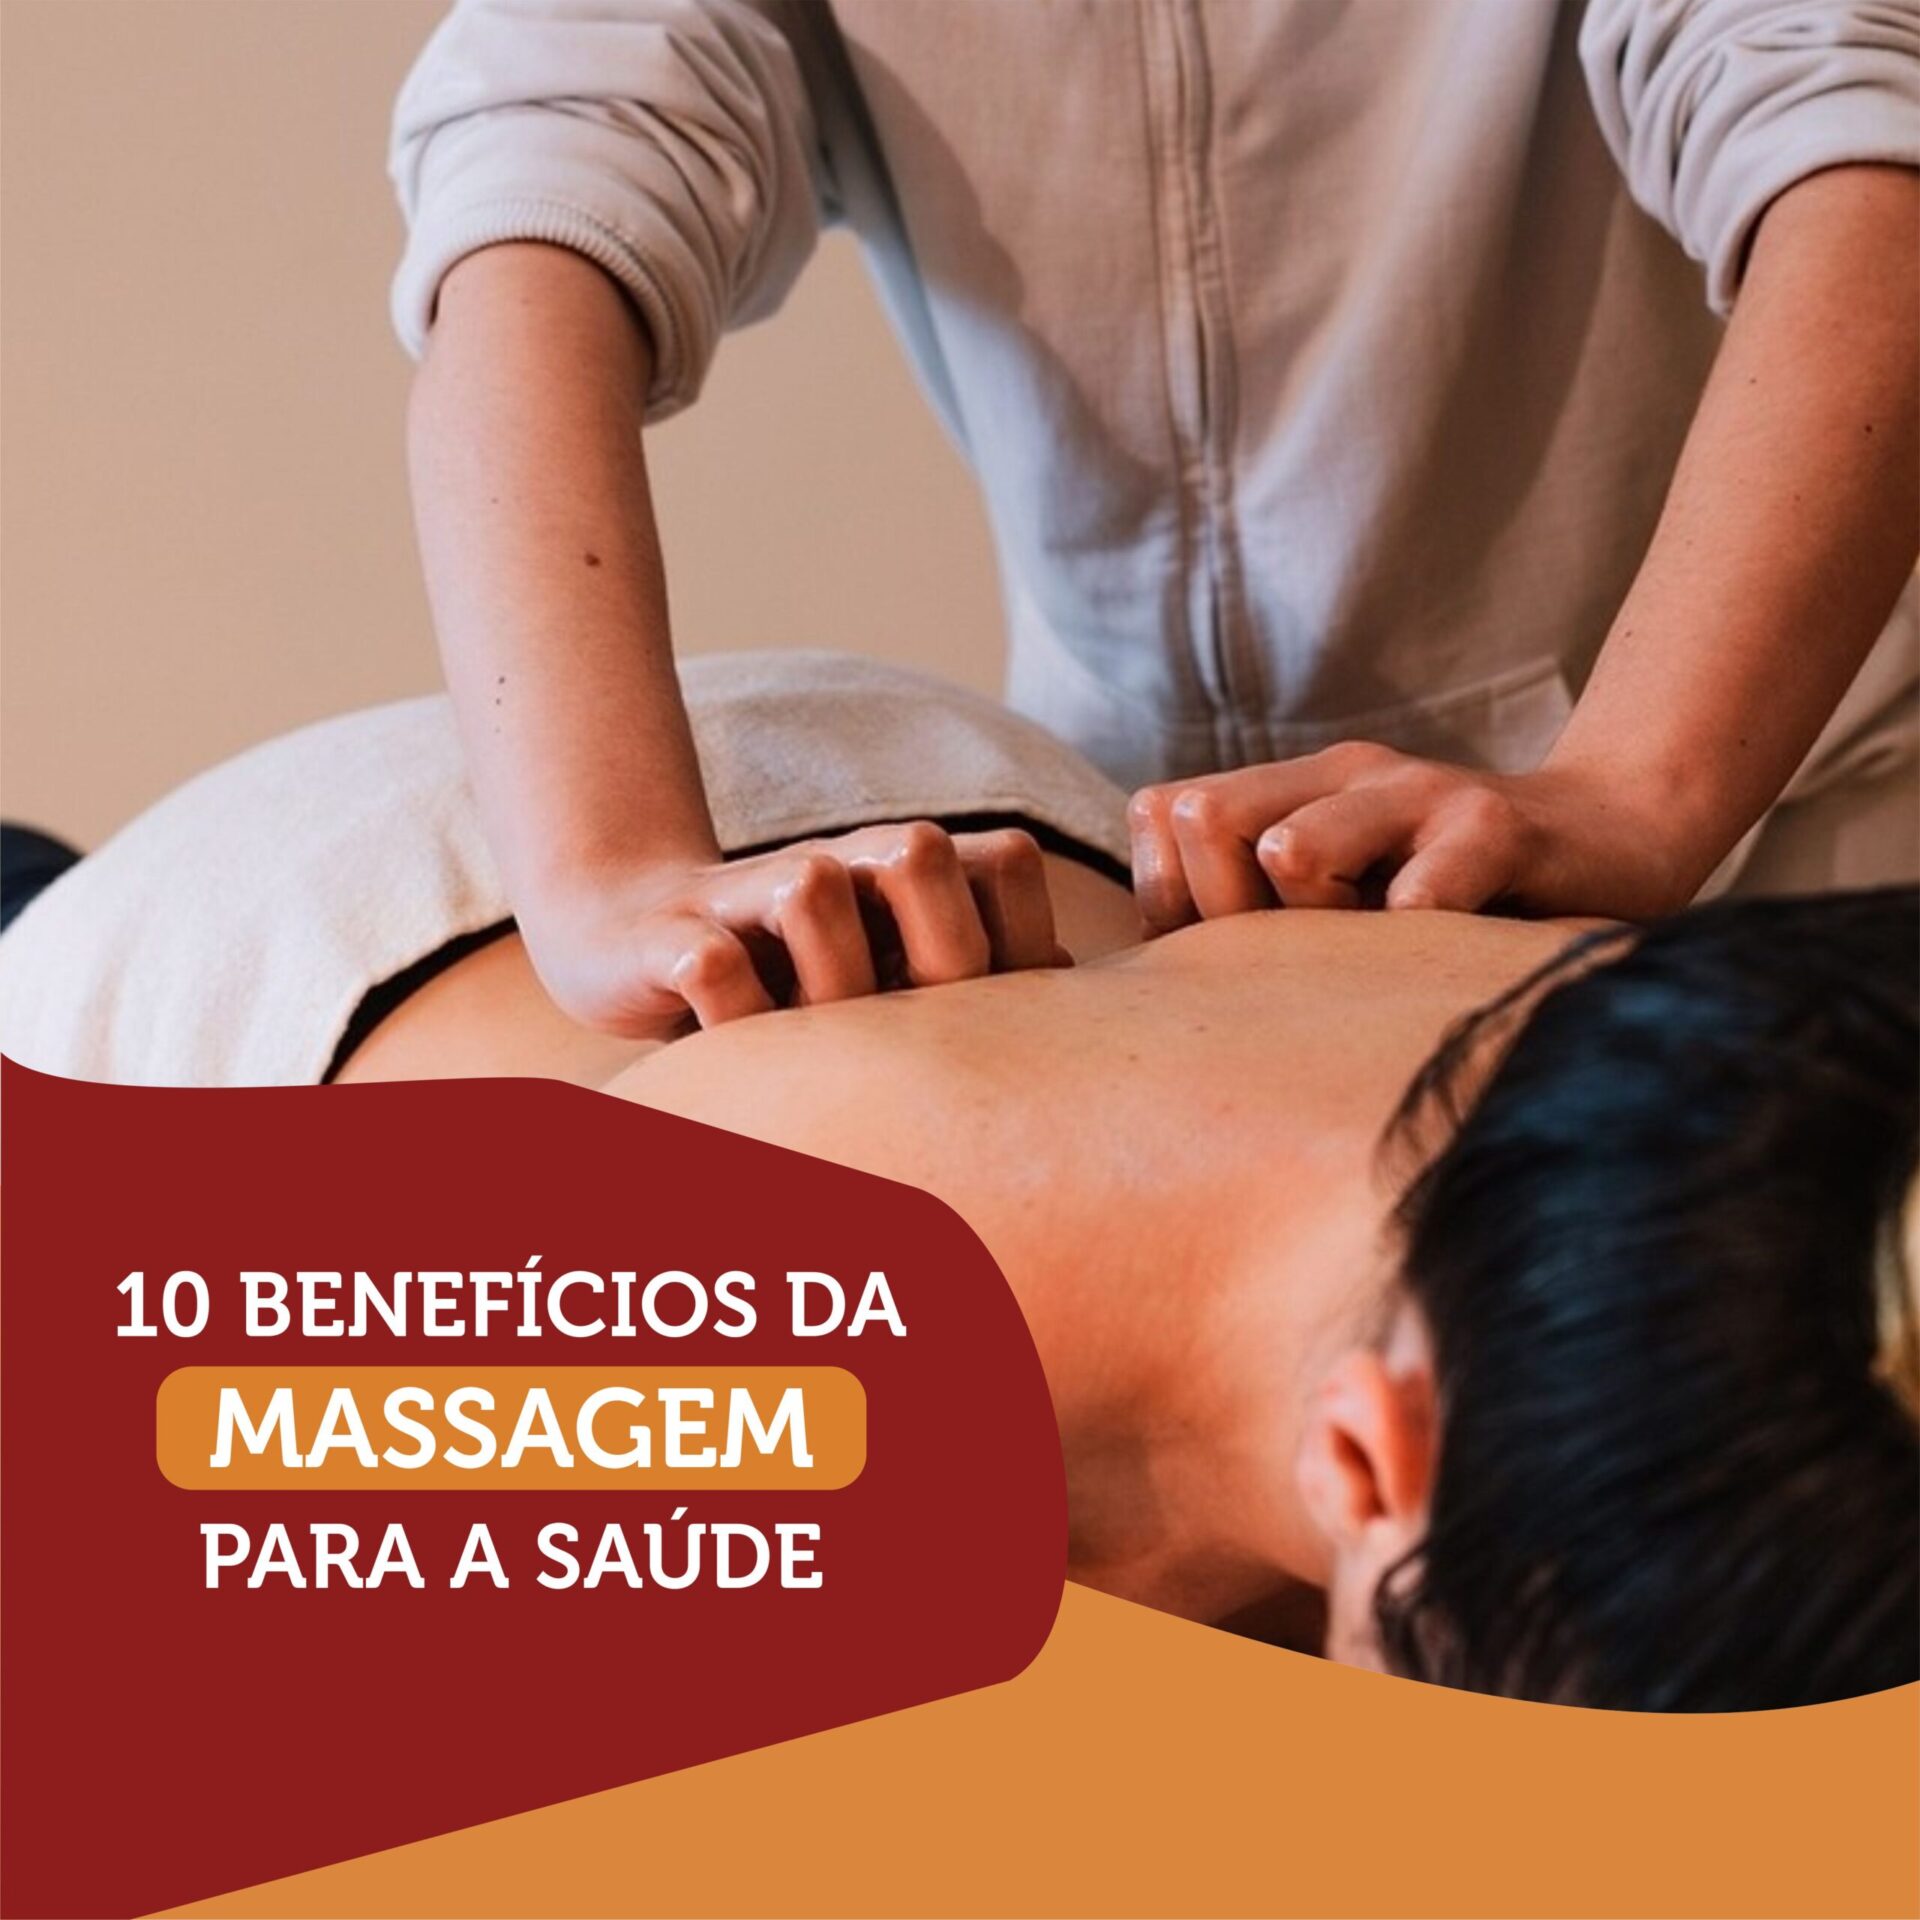 10 Benefícios da Massagem para a saúde